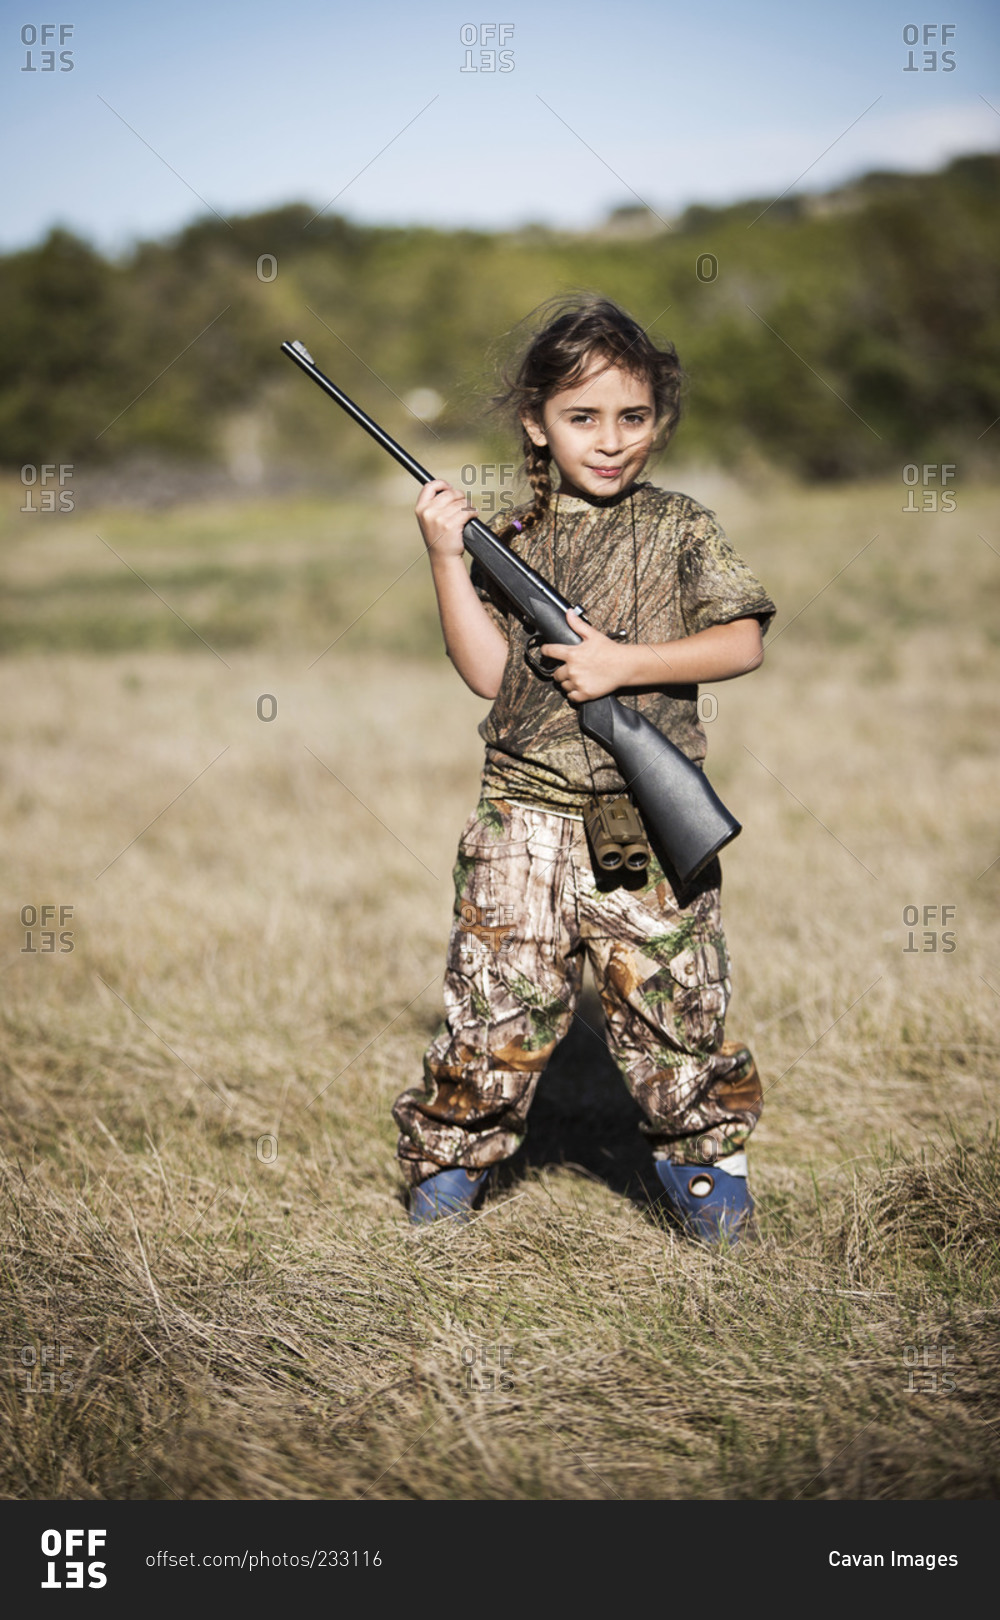 little girl with gun art